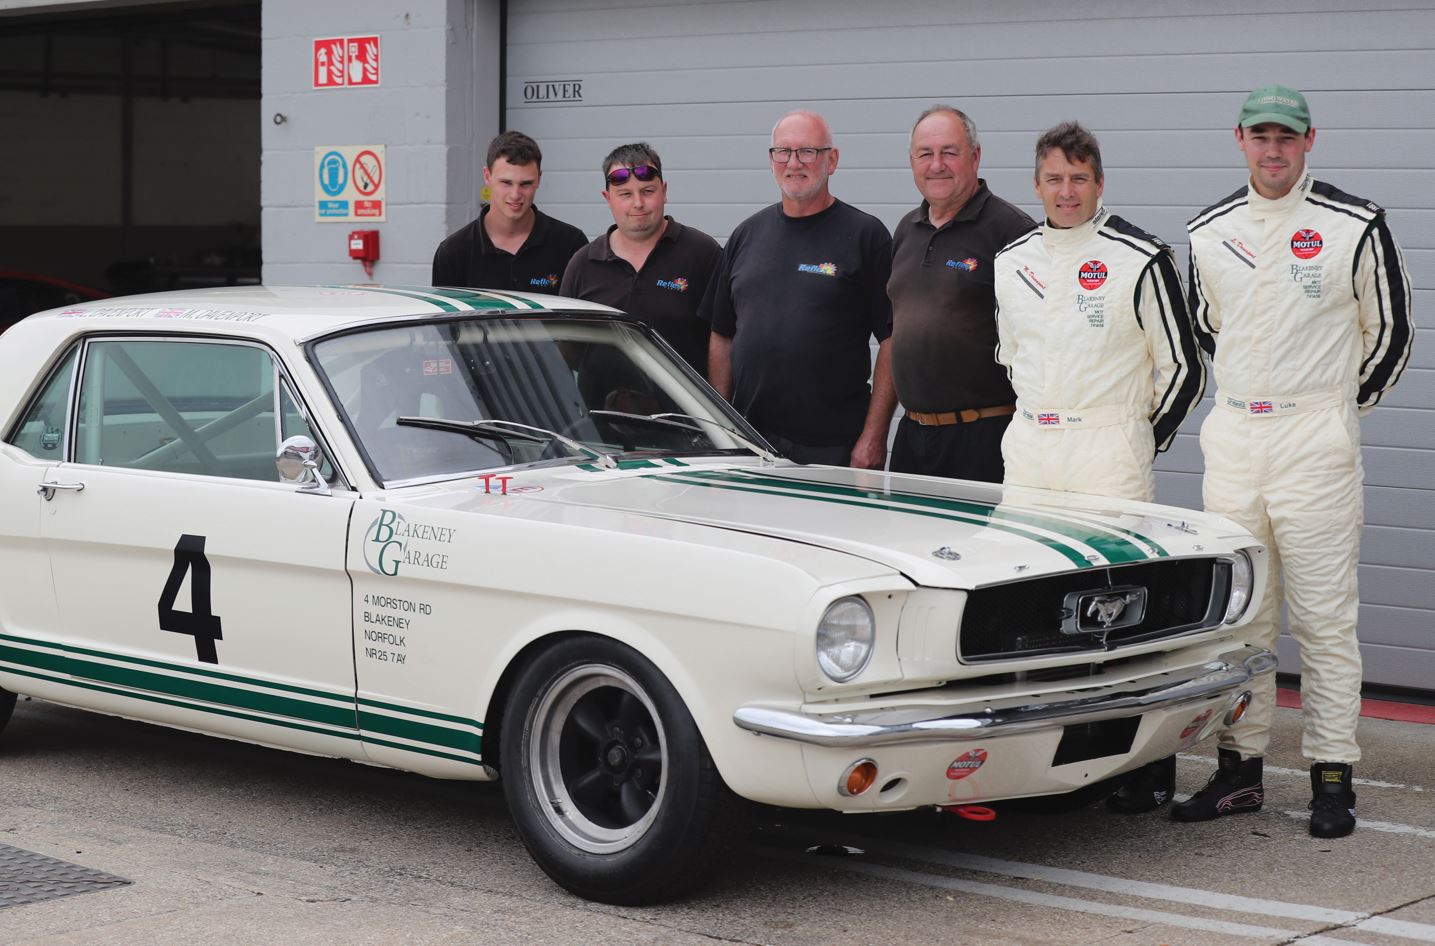 The Blakeney Garage Motorsport Team